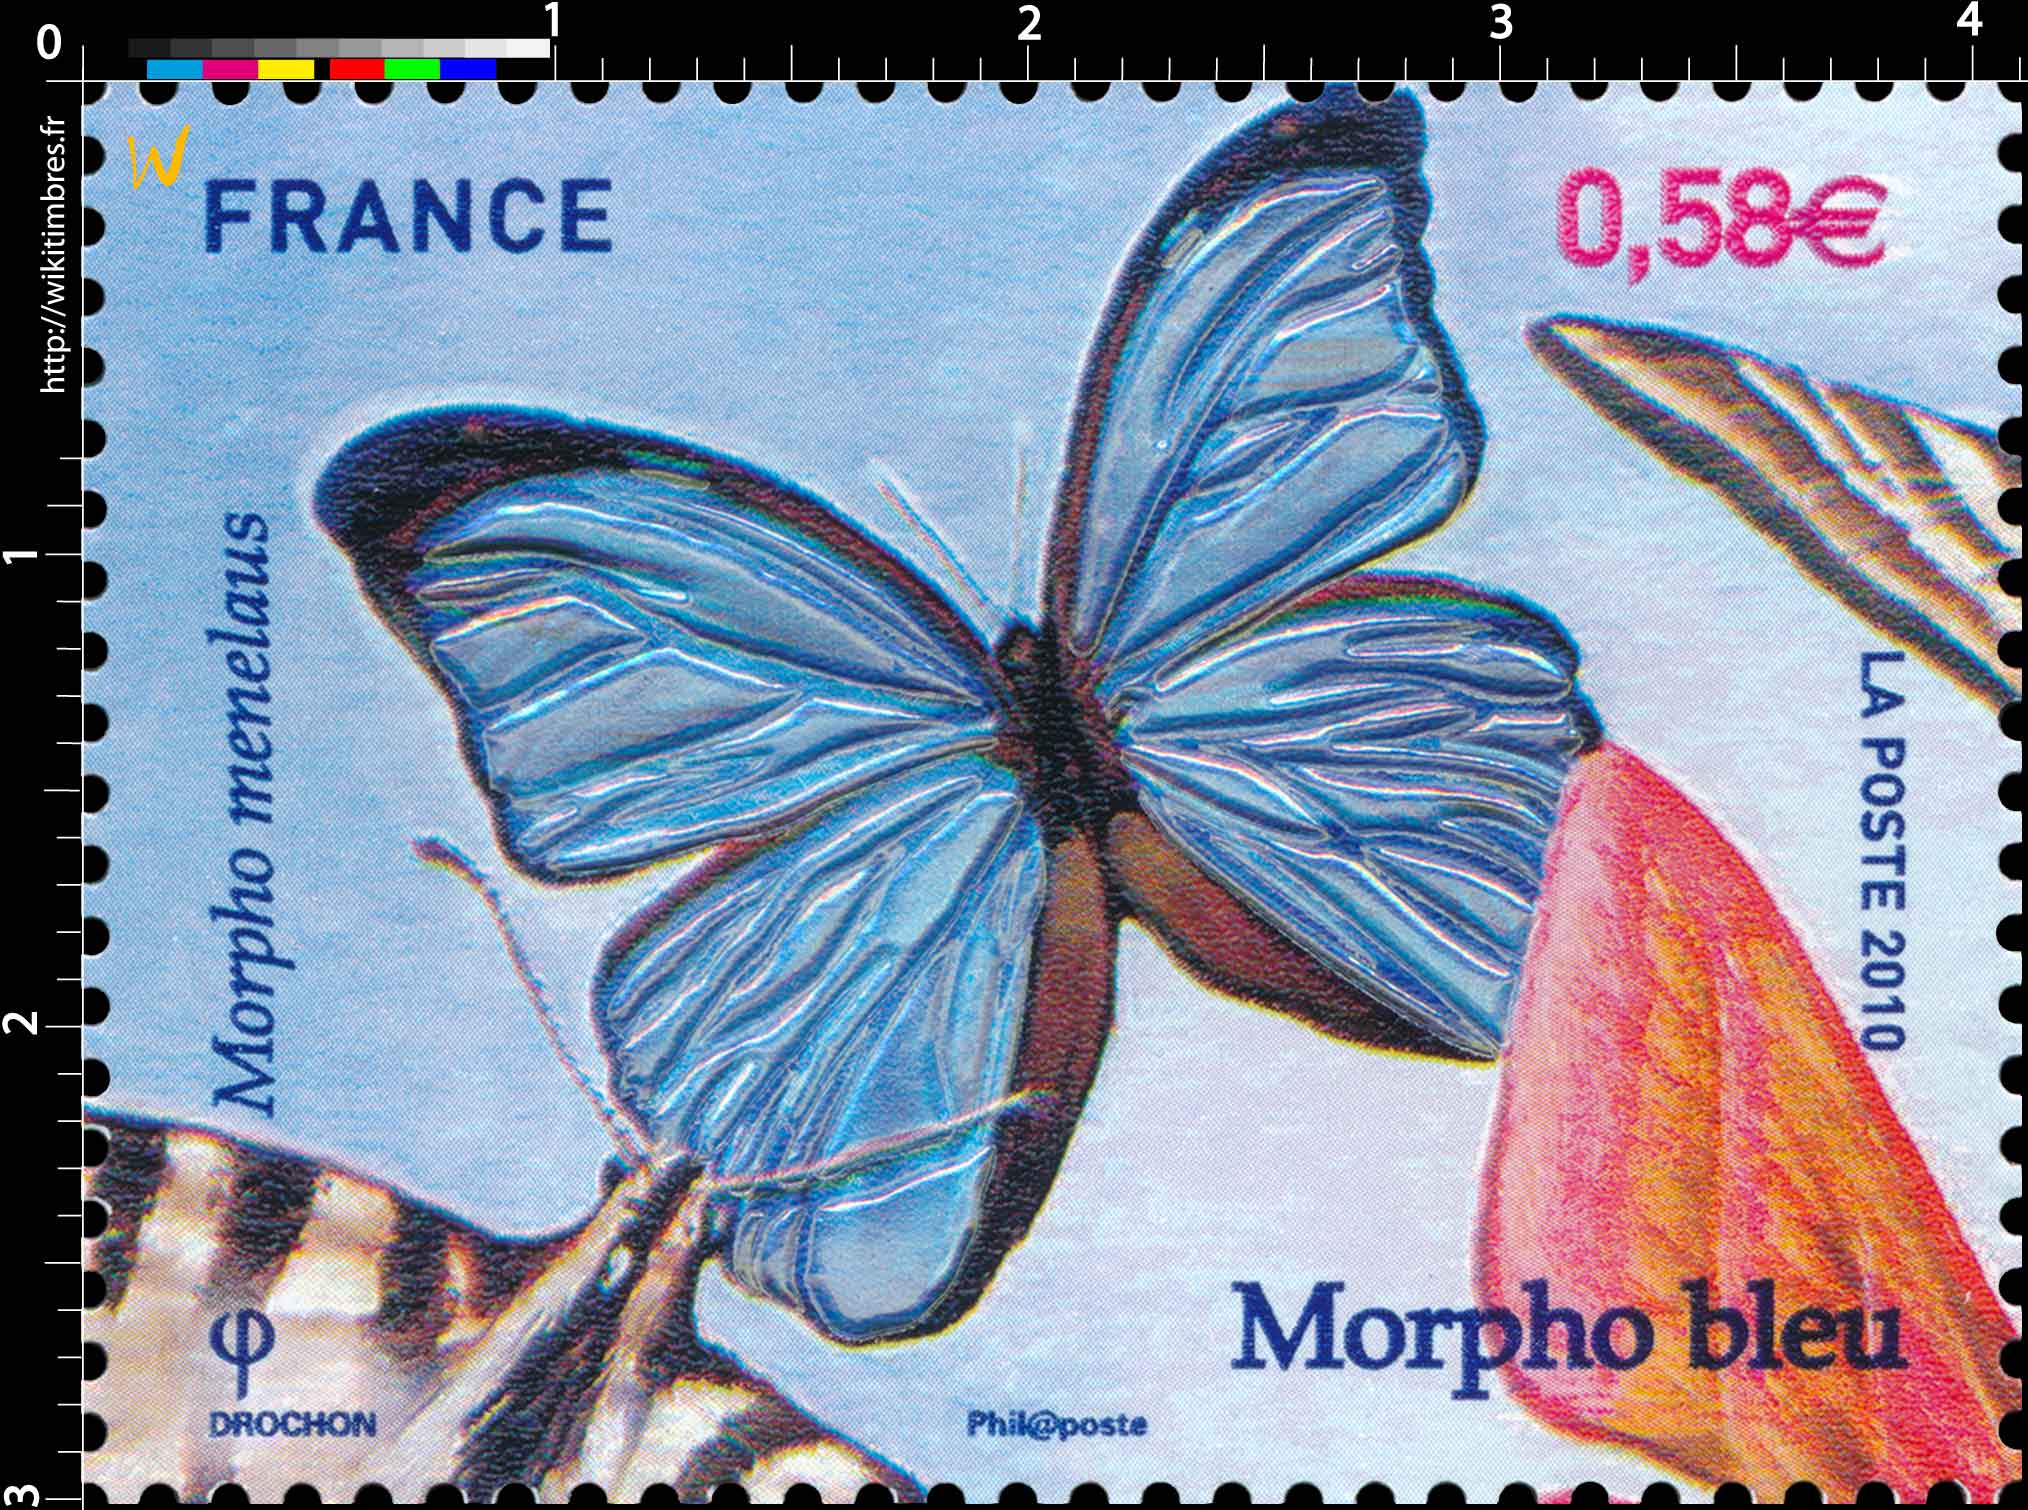 2010 Morpho bleu - Morpho menelaus